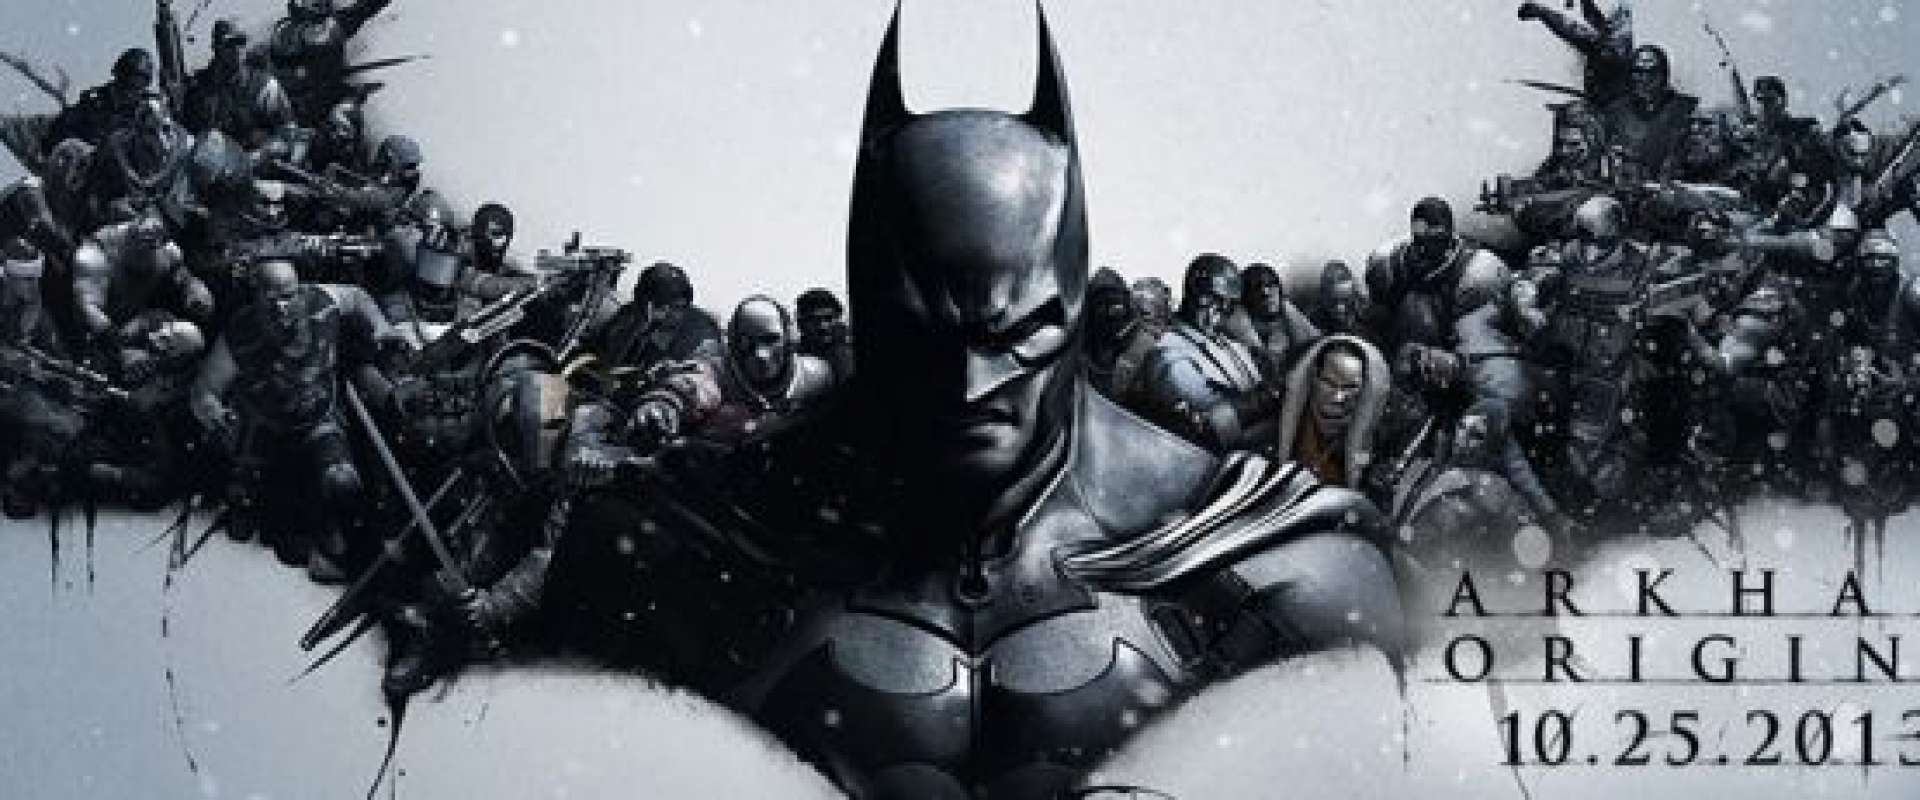 Batman Arkham Origins Ps3 Dublado E Leganda Português + Dlc